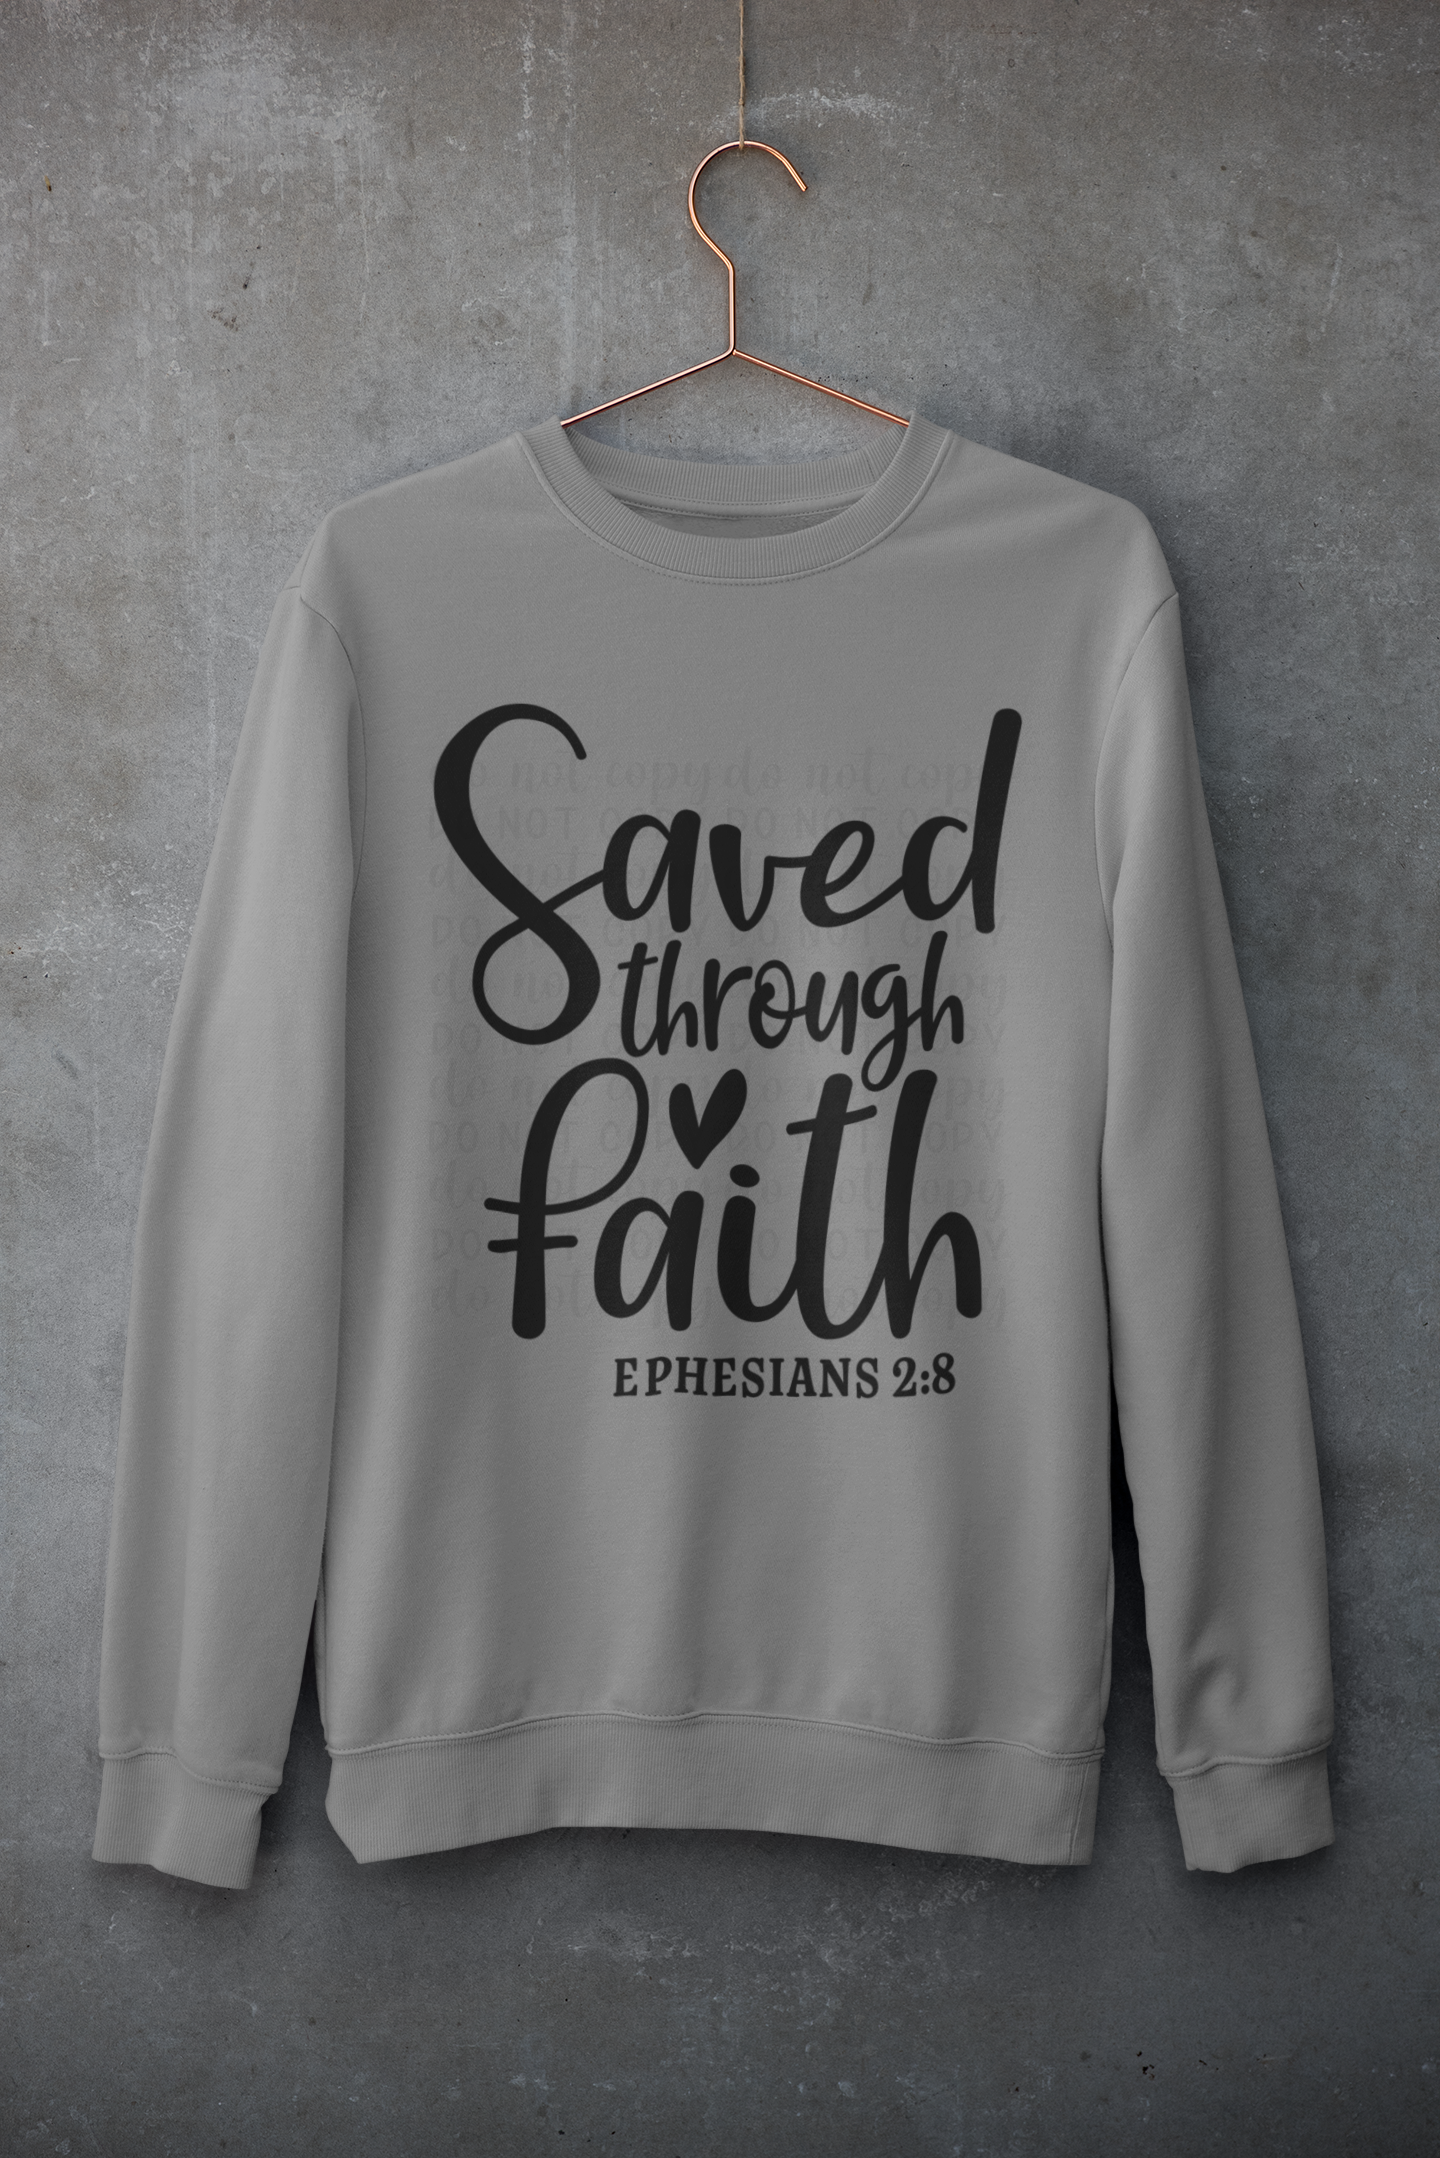 Saved through Faith